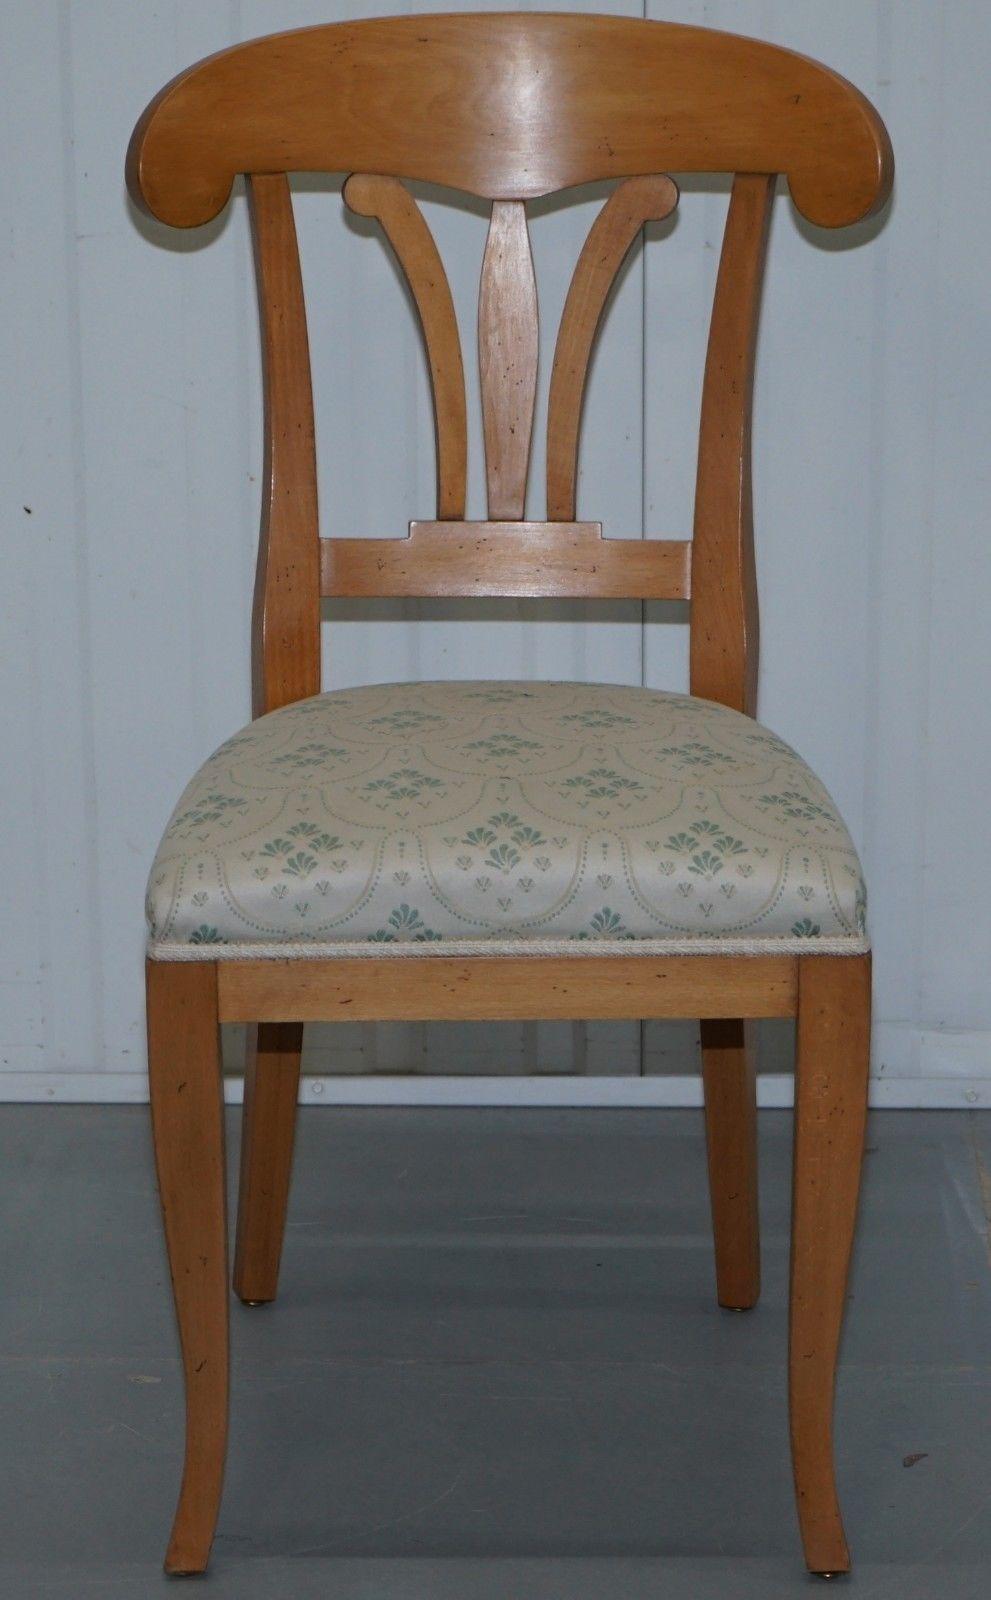 Wir freuen uns, diesen atemberaubenden Selva Italien RRP £399 Frisiertisch Stuhl zum Verkauf anbieten zu können

Dieser Stuhl ist Teil einer Suite, ich habe die passende mittelgroße Kommode und ein Paar Nachttische und den Frisiertisch unter